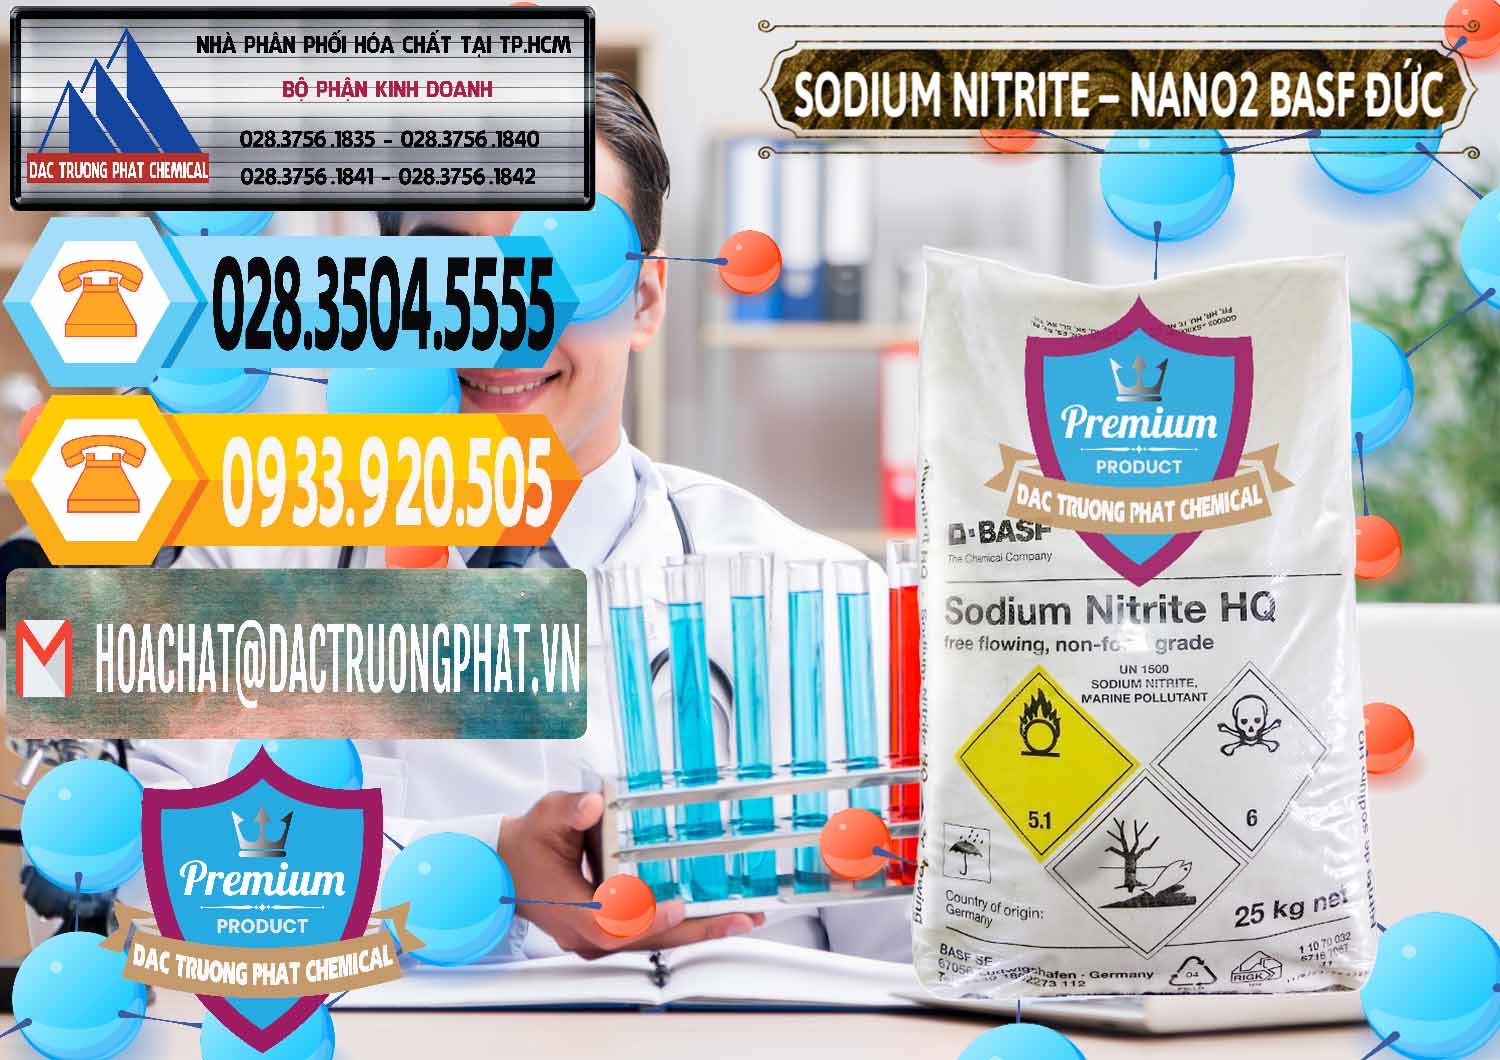 Chuyên kinh doanh - bán Sodium Nitrite - NANO2 Đức BASF Germany - 0148 - Chuyên cung ứng _ phân phối hóa chất tại TP.HCM - hoachattayrua.net